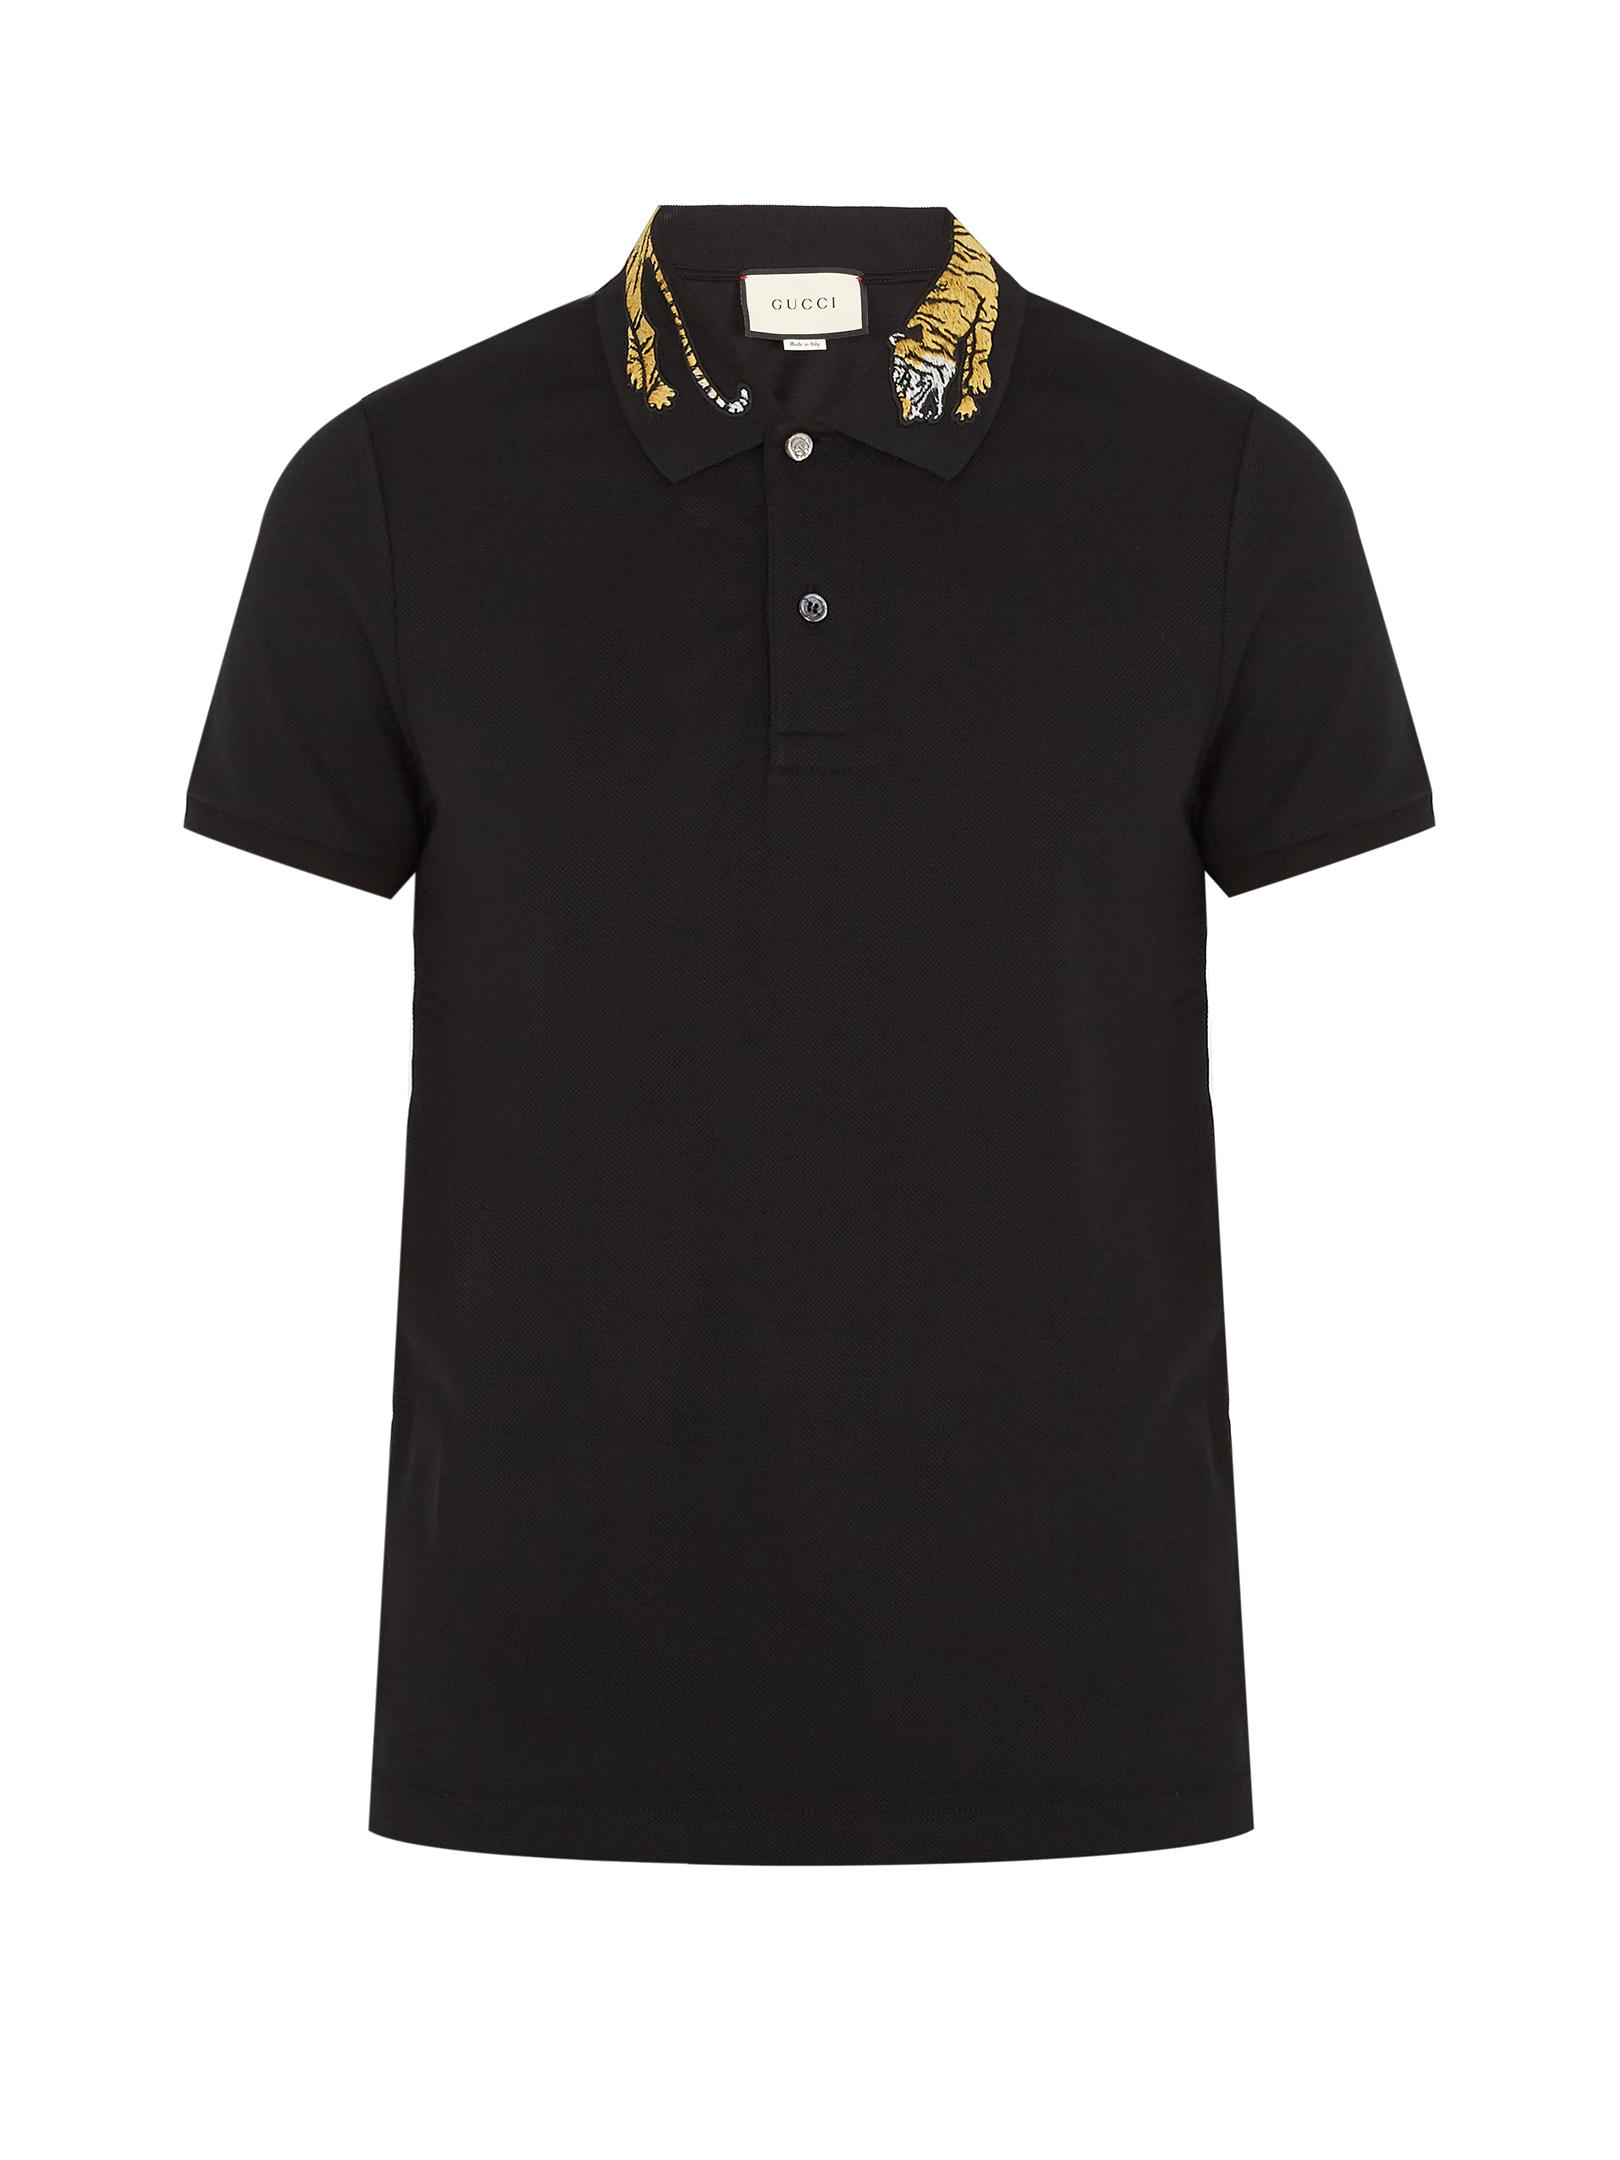 Gucci Tiger-appliqué Cotton-blend Piqué Polo Shirt in Black for Men | Lyst